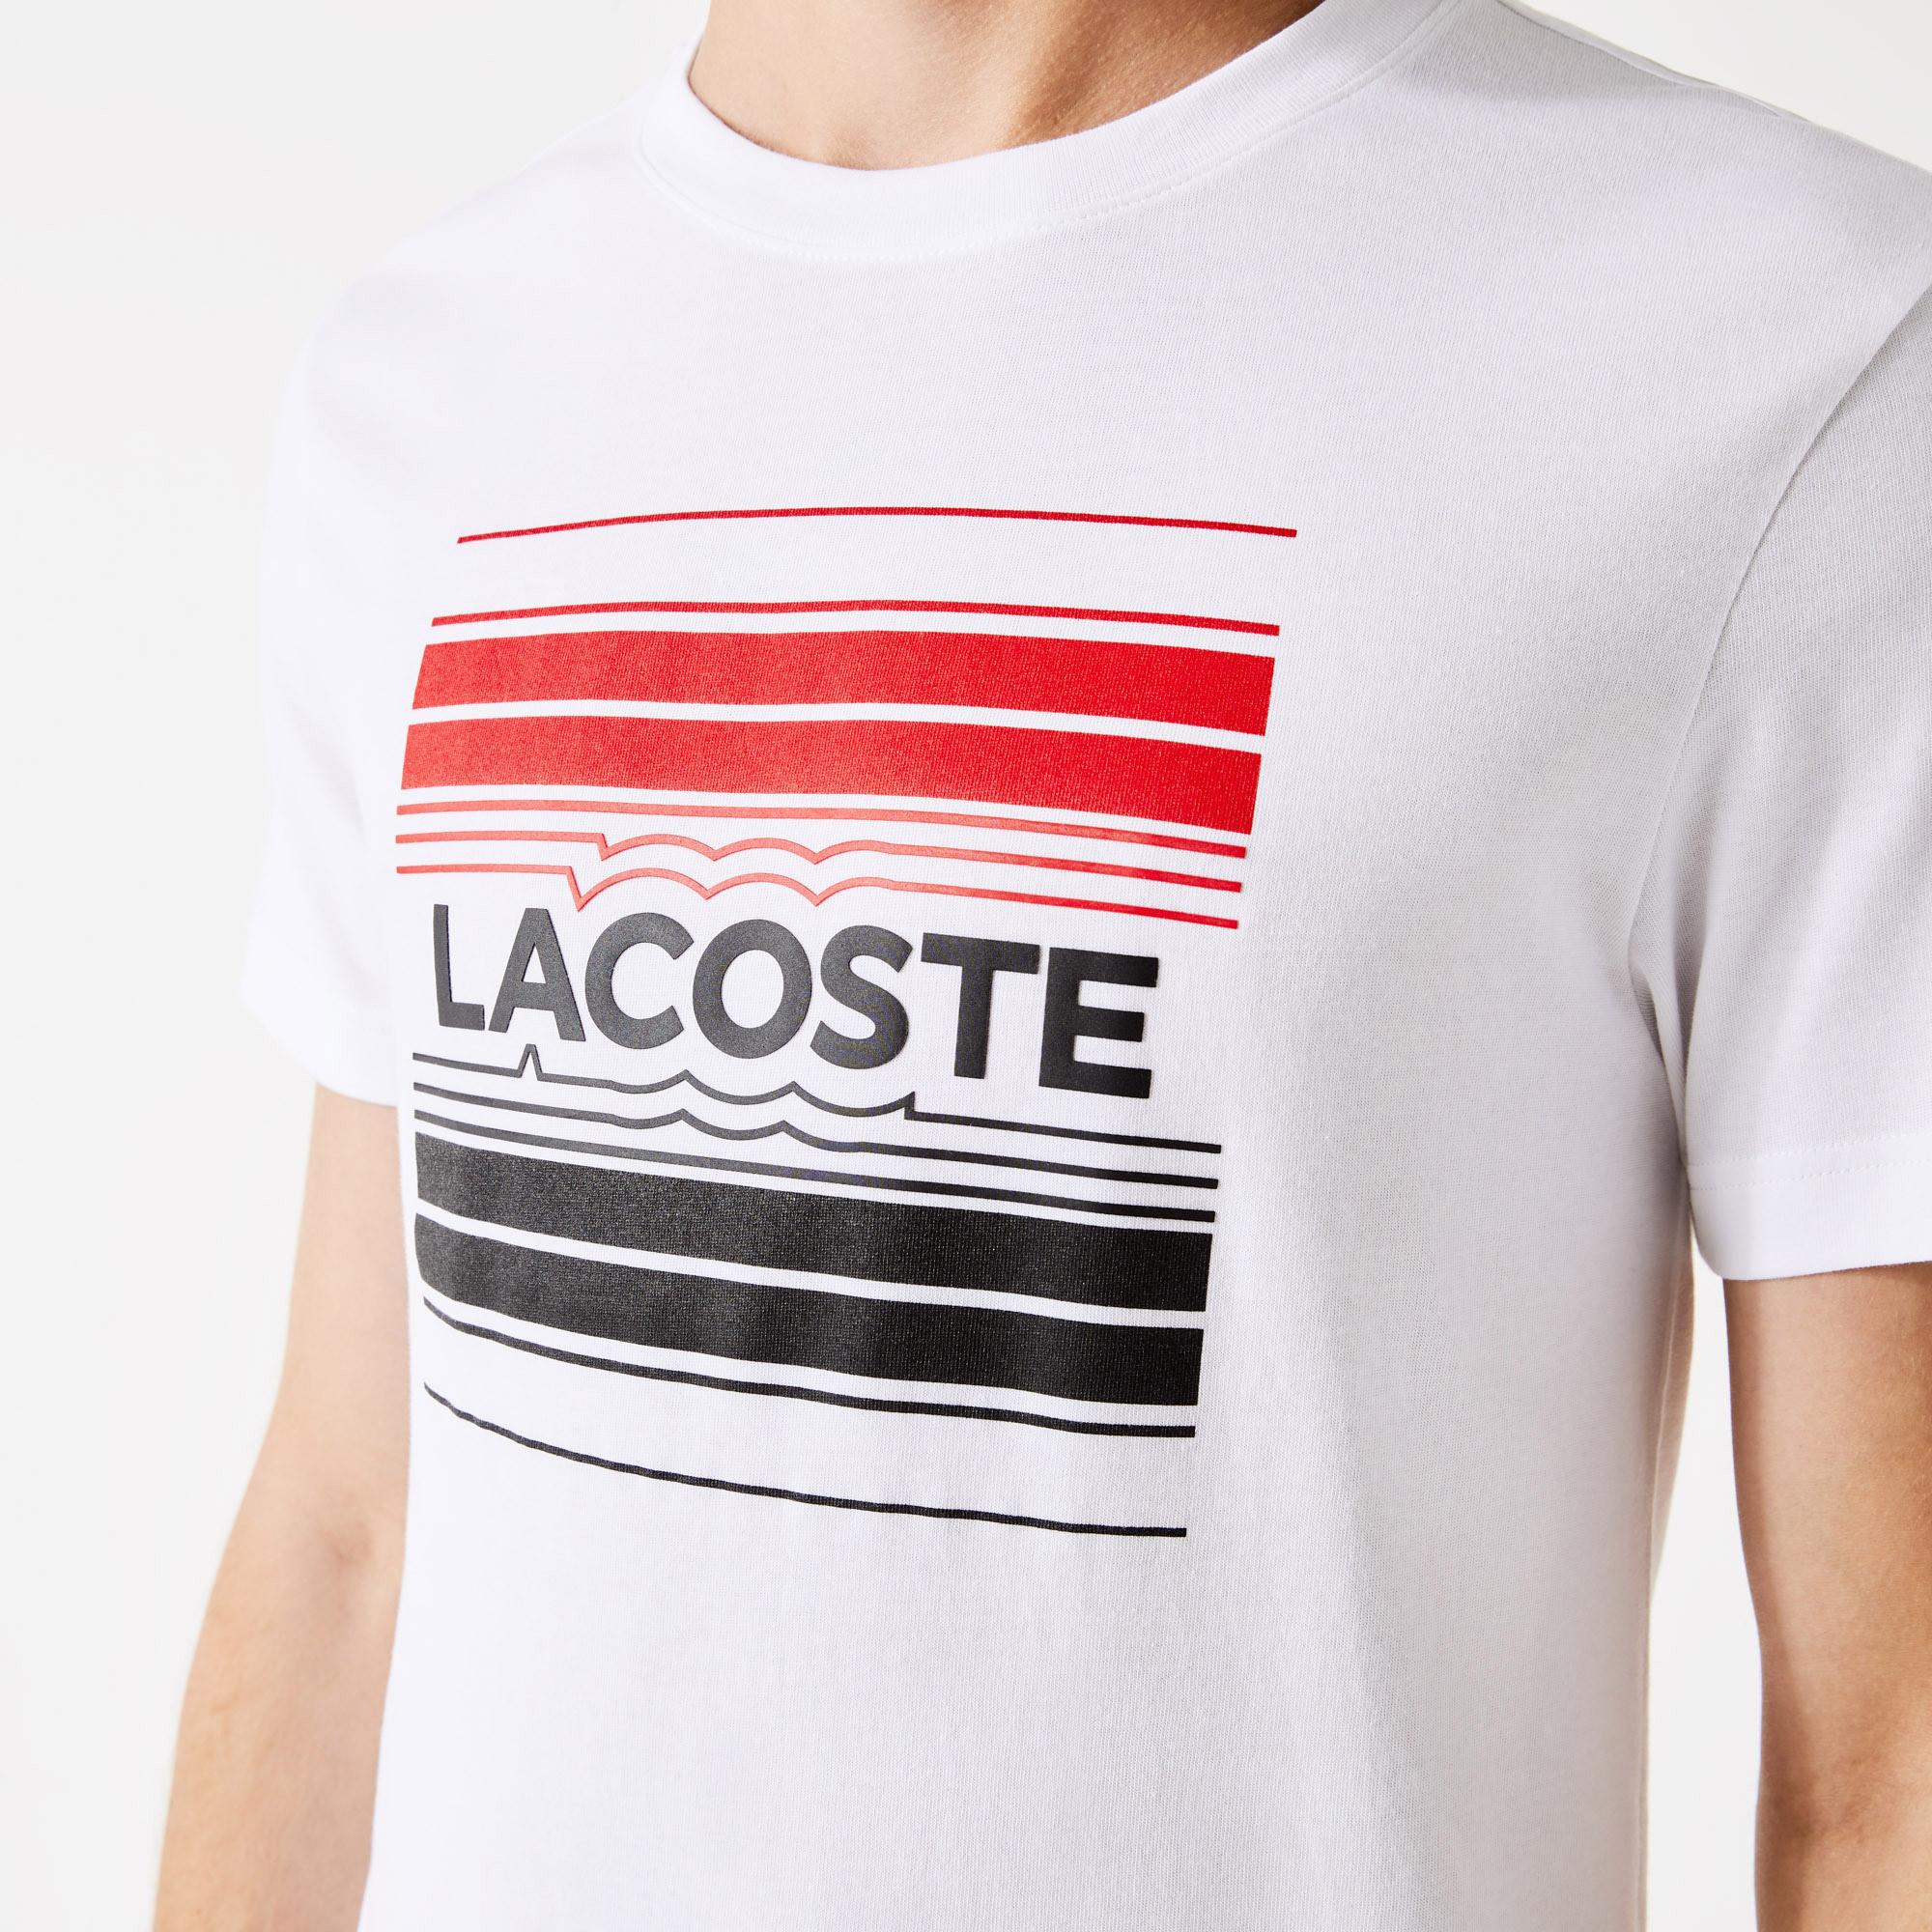 Lacoste Koszulka męska SPORT ze stylizowanym drukowanym logo z bawełny organicznej